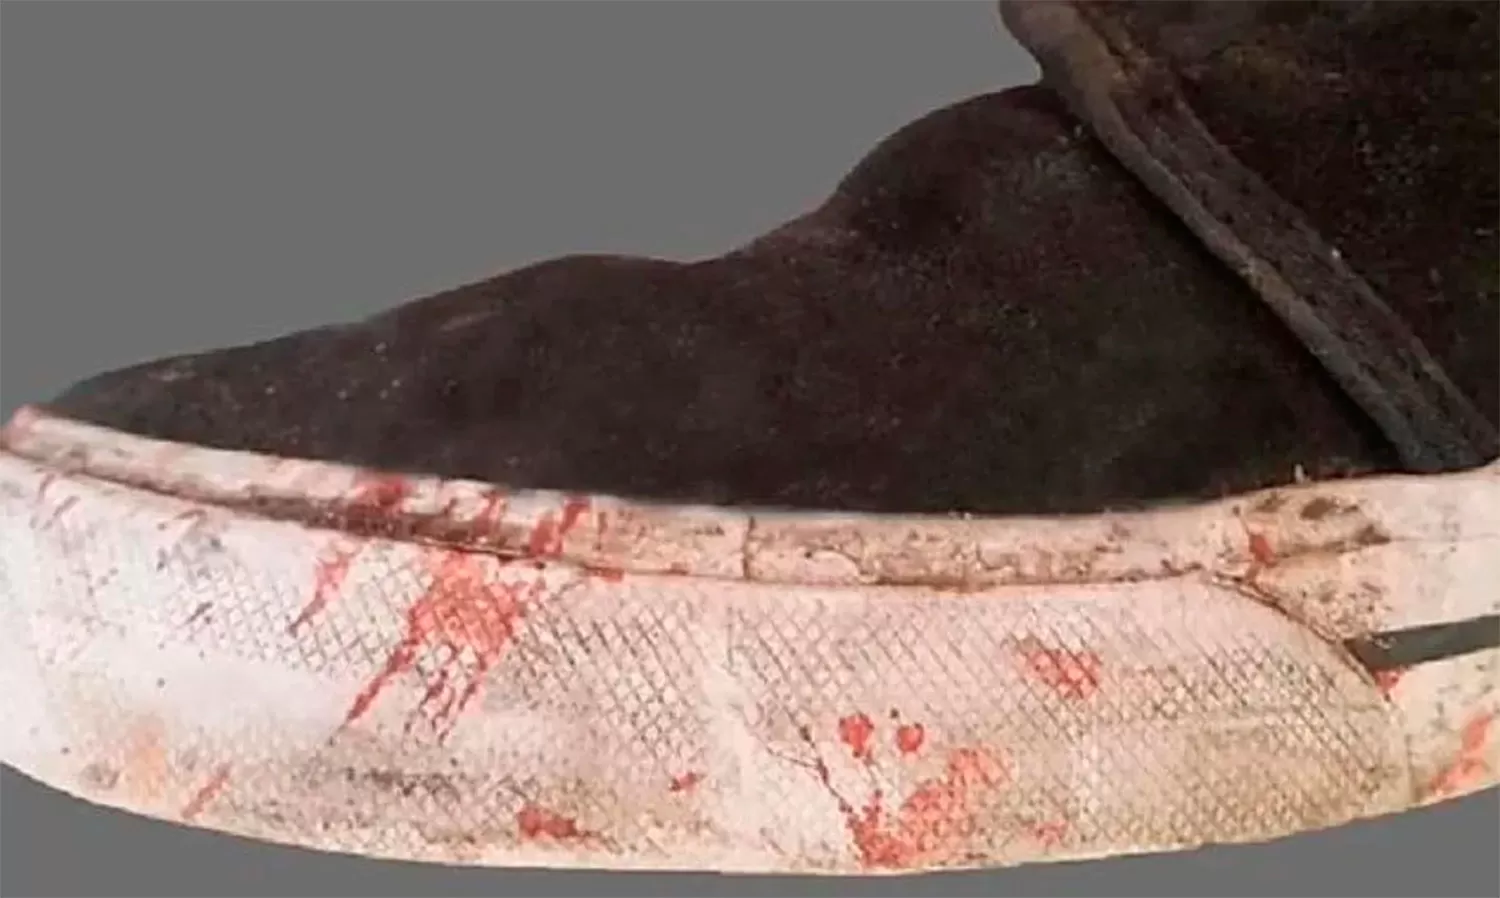 Esta es la zapatilla con la que patearon a Fernando Báez Sosa hasta matarlo